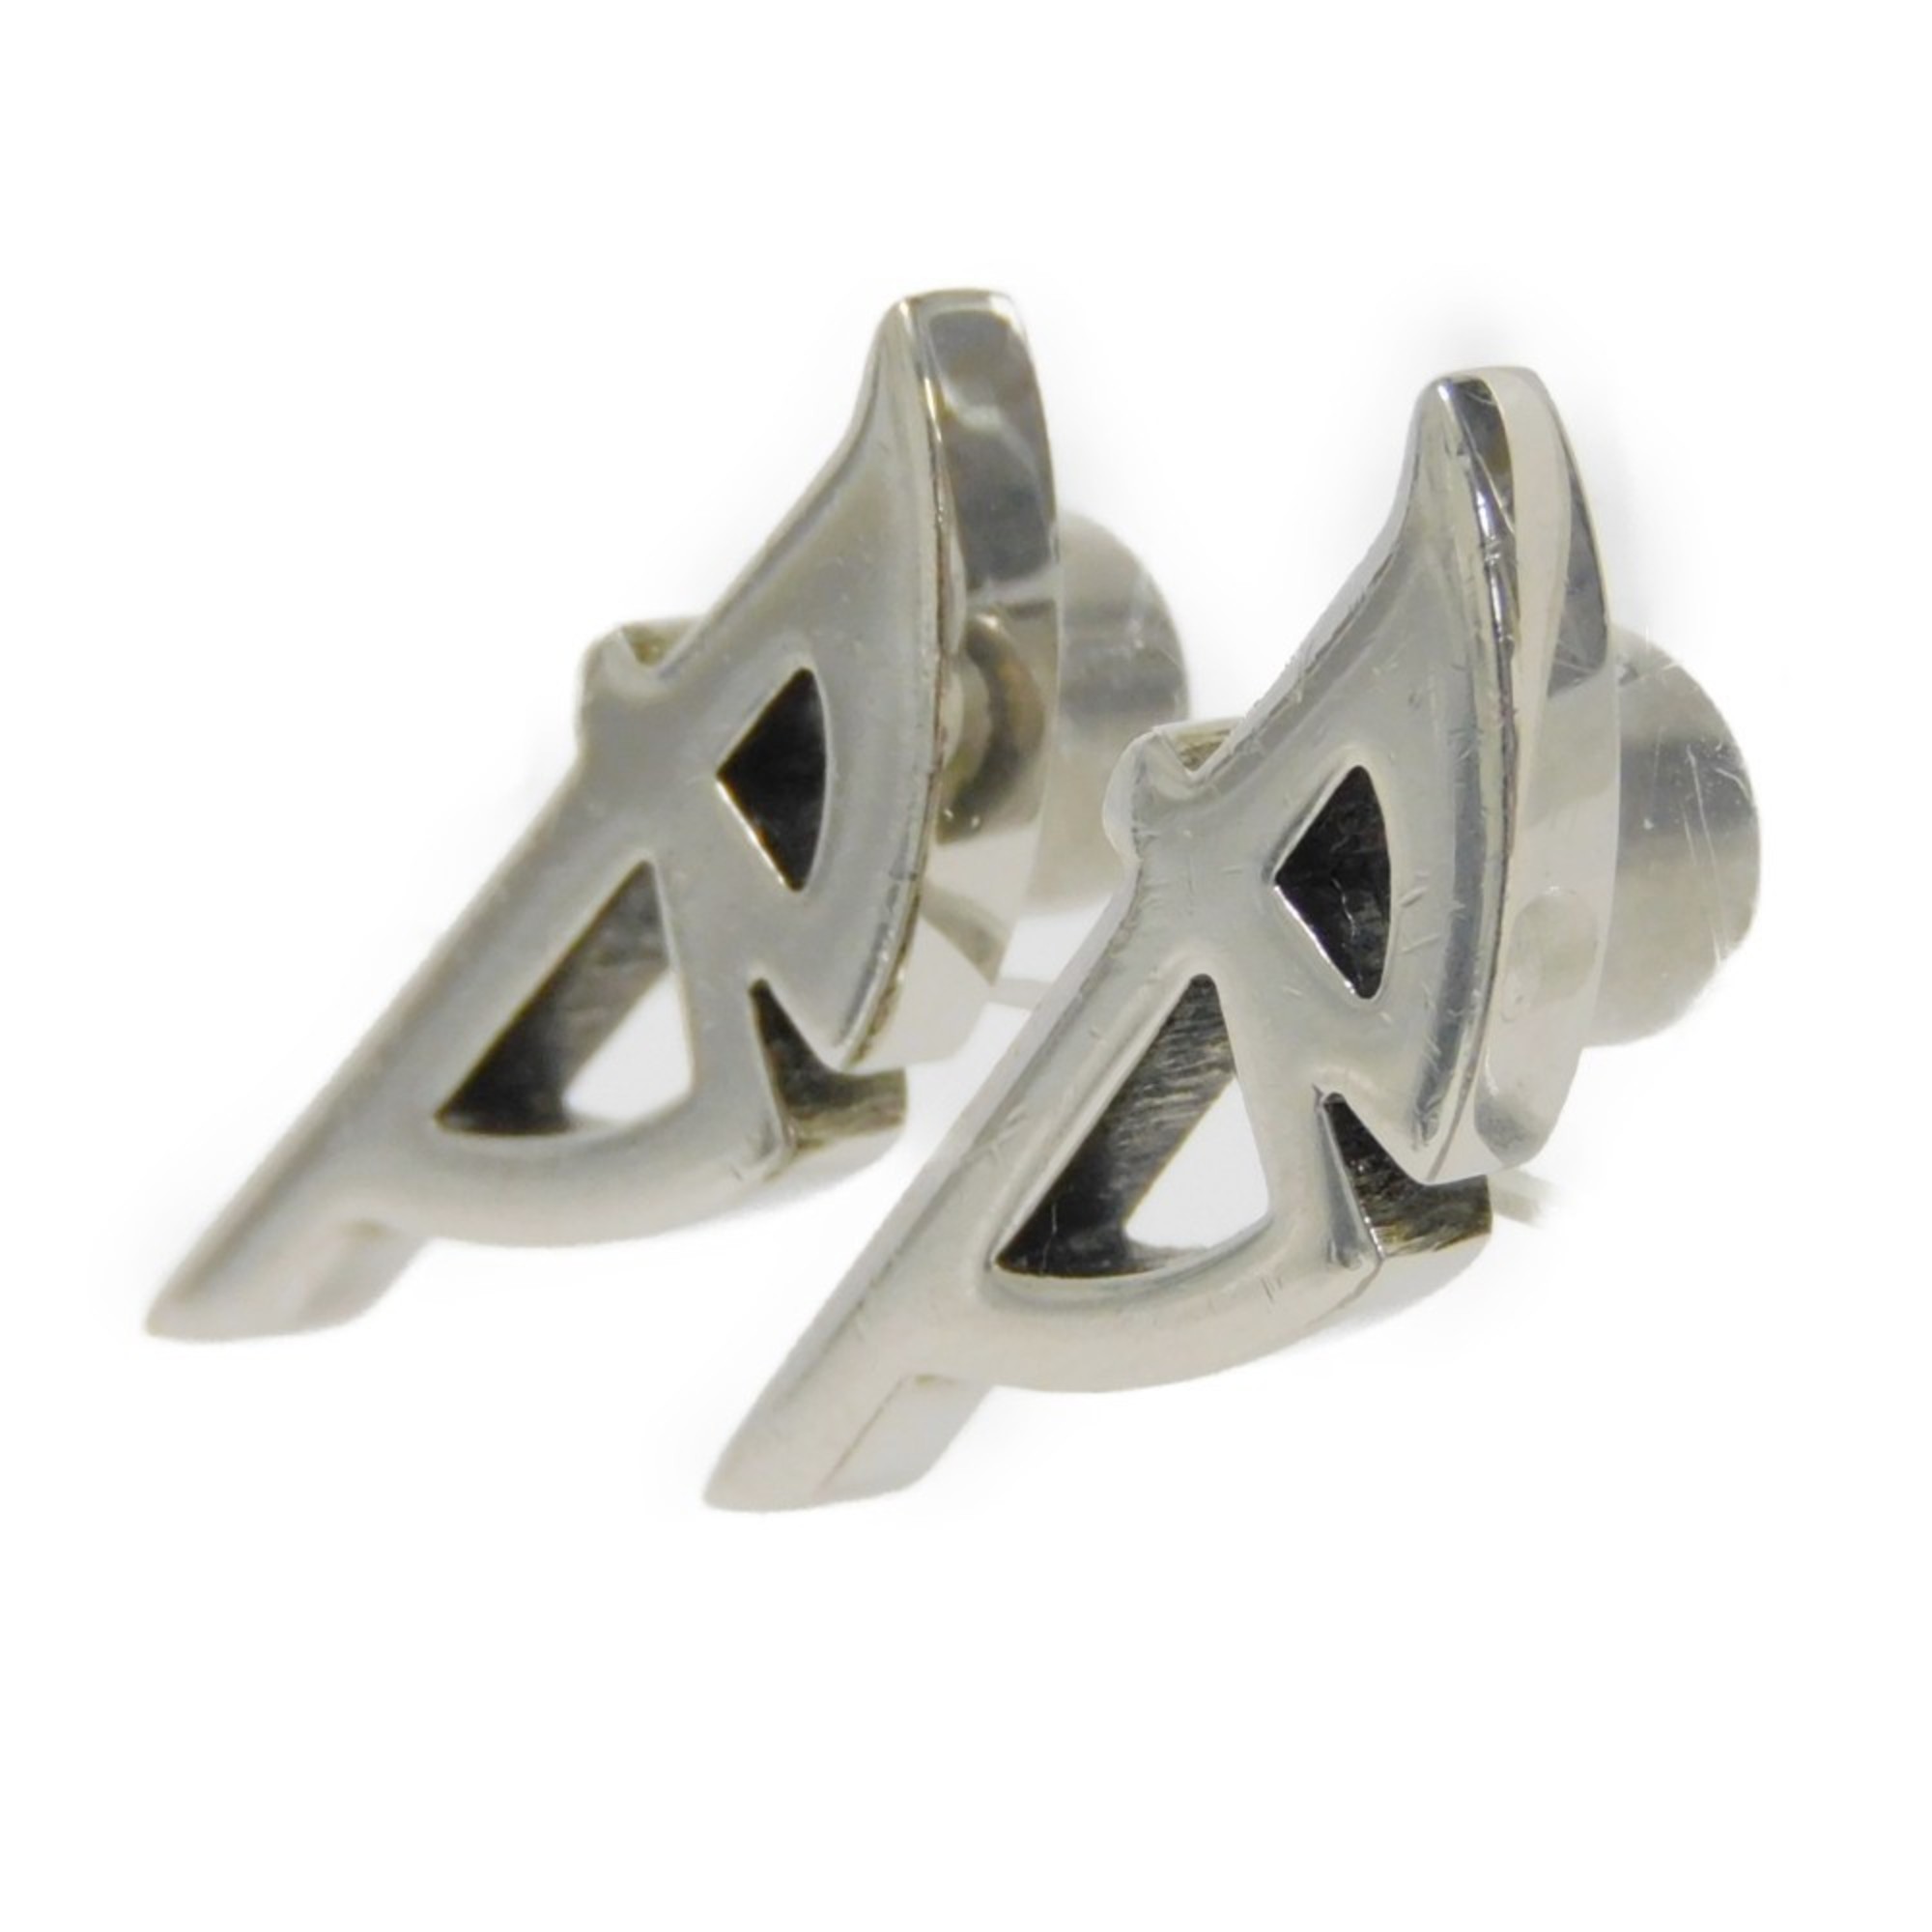 BALENCIAGA pierced earrings, Typo metal B side engraved studs, disc backs, brass, silver, 787785 TZ99I 0911, men's